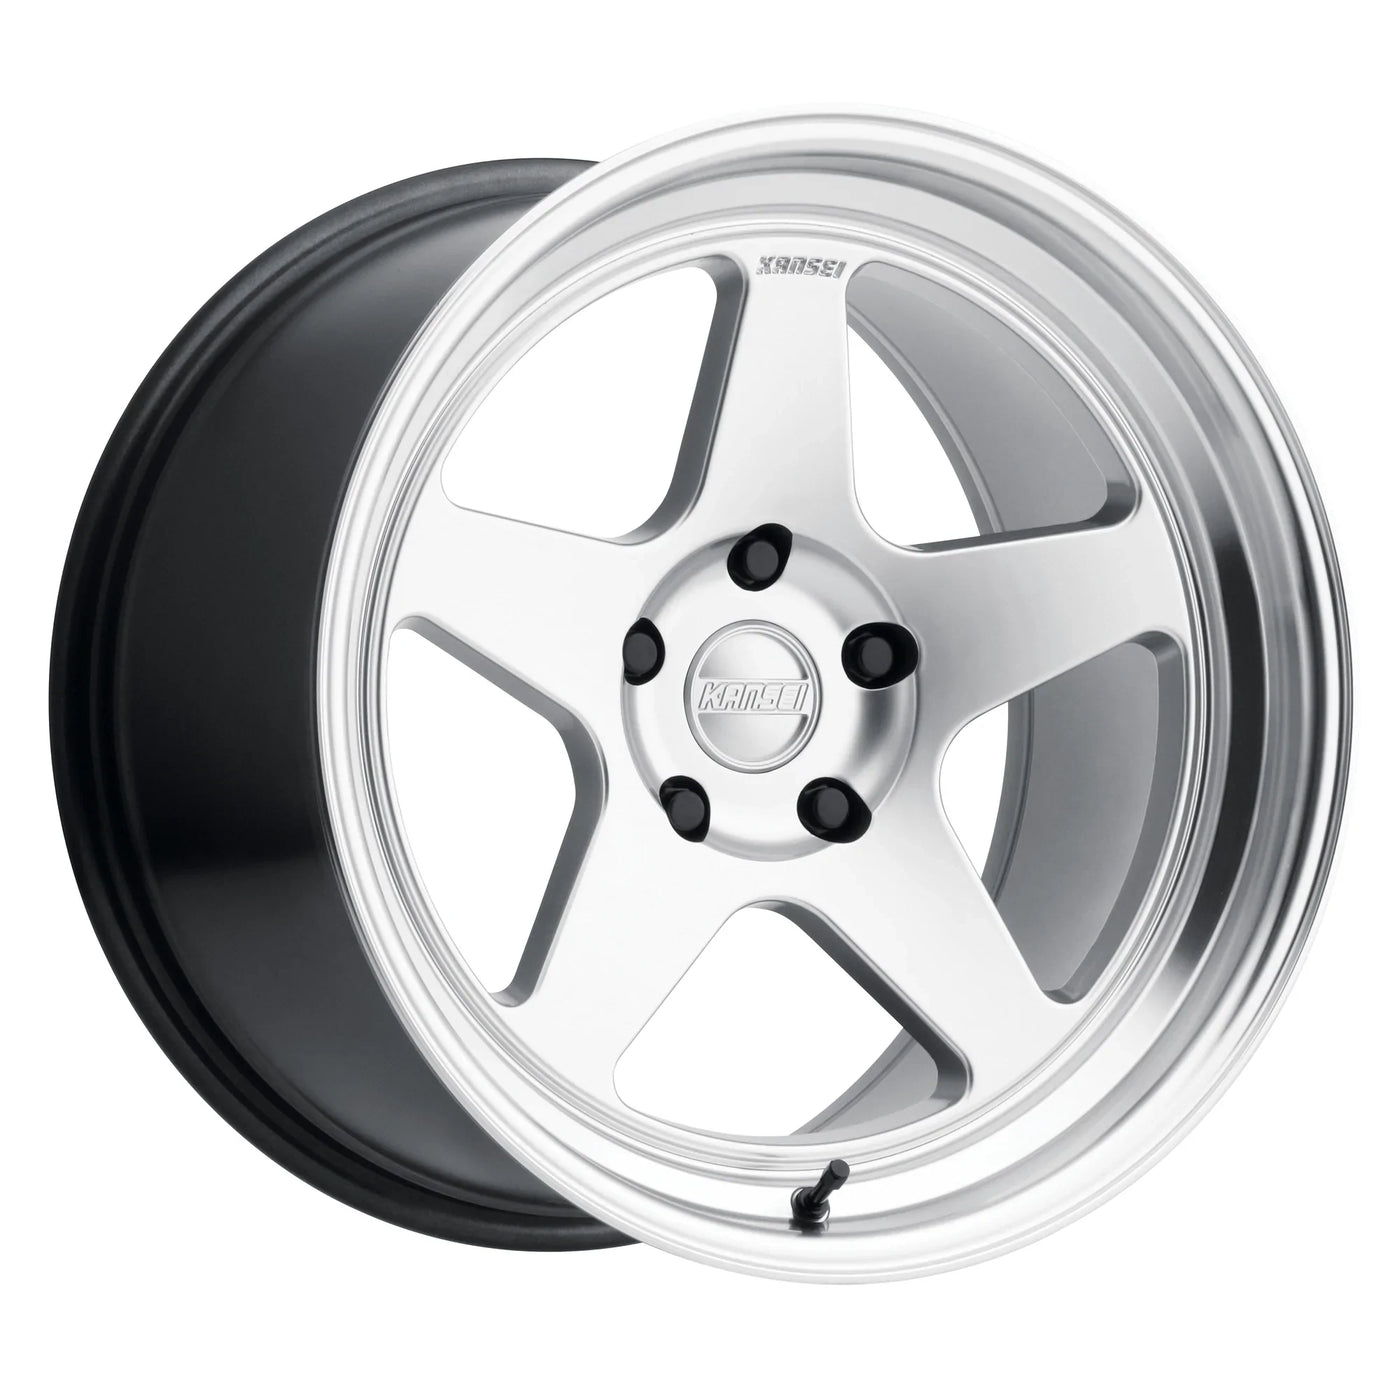 Kansei KNP Wheels 18X8.5 5X120 +35 - Silver